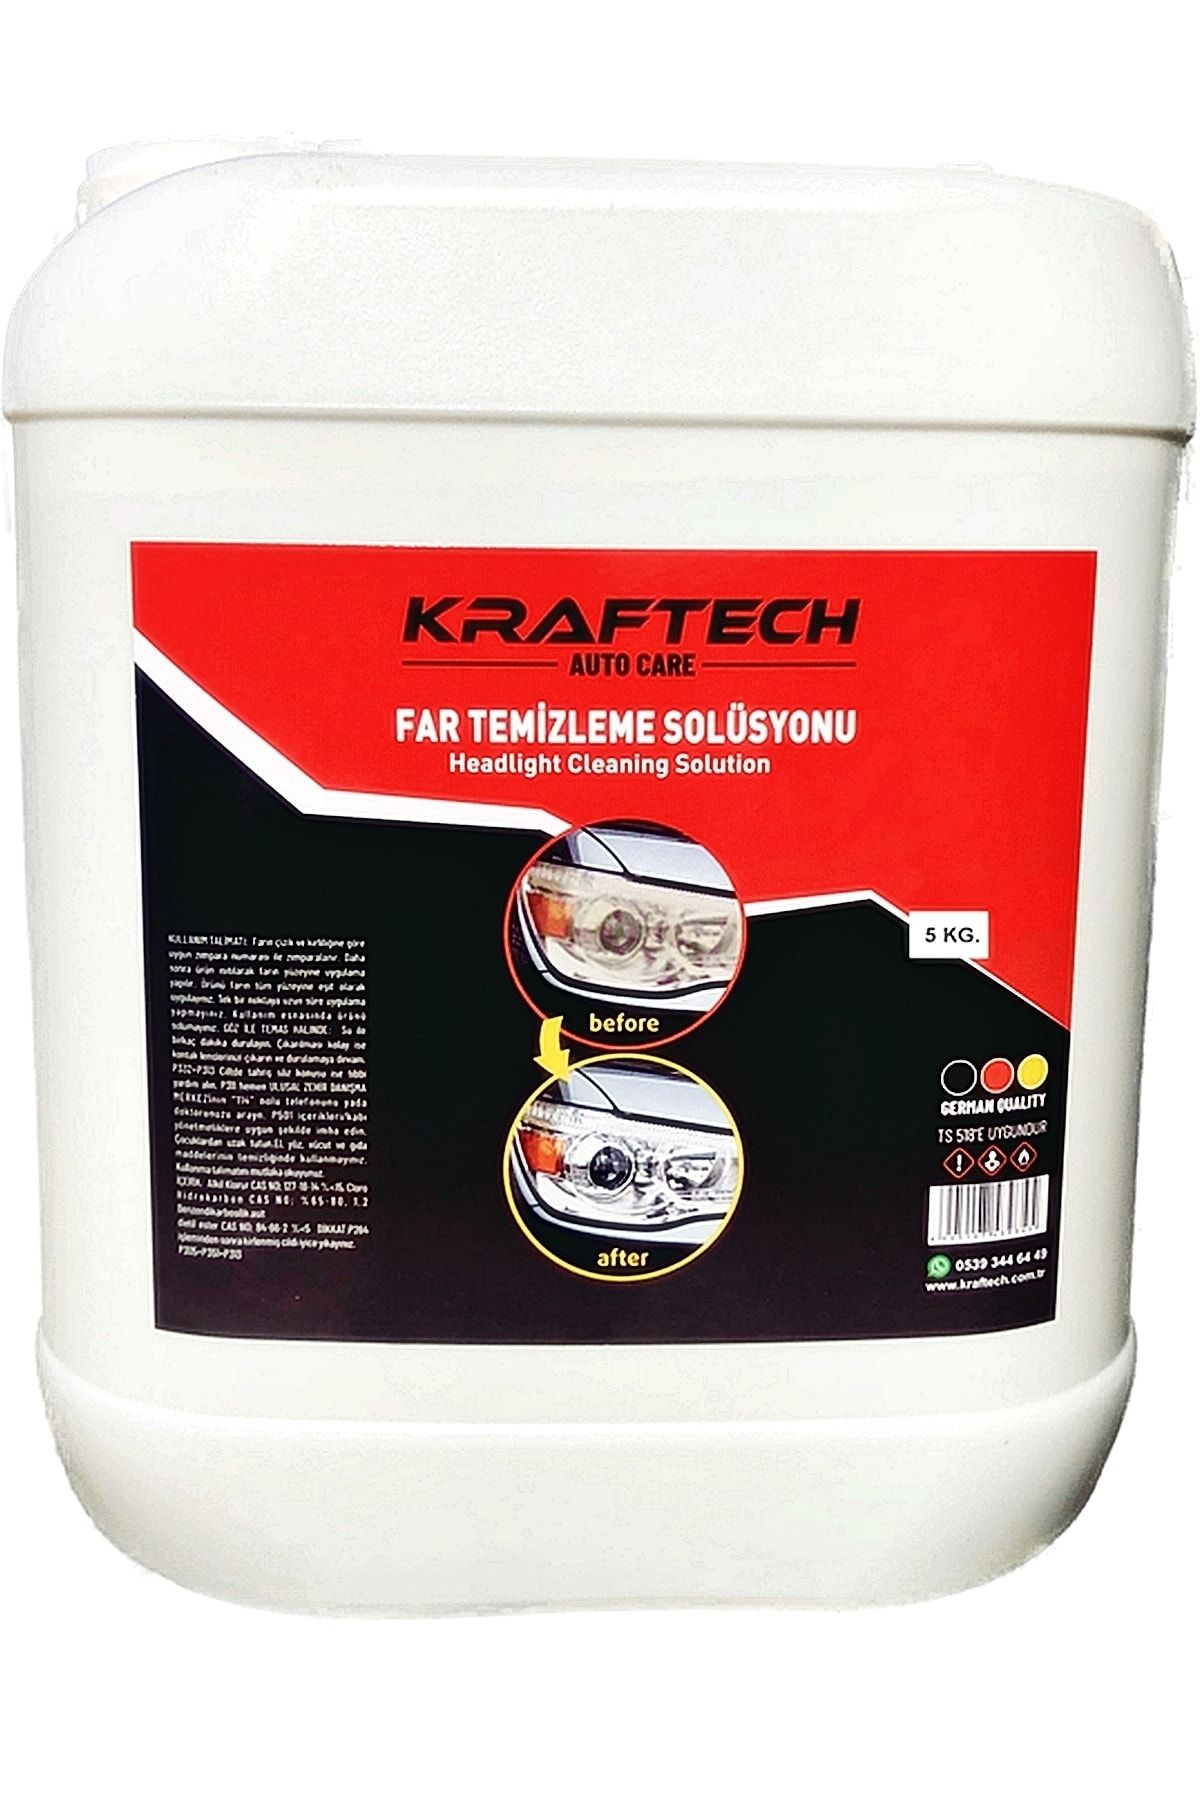 Kraftech Yeni Nesil Buharlı Far Temizleme Sıvısı Far Parlama Solüsyonu Kloroform 5 Kg